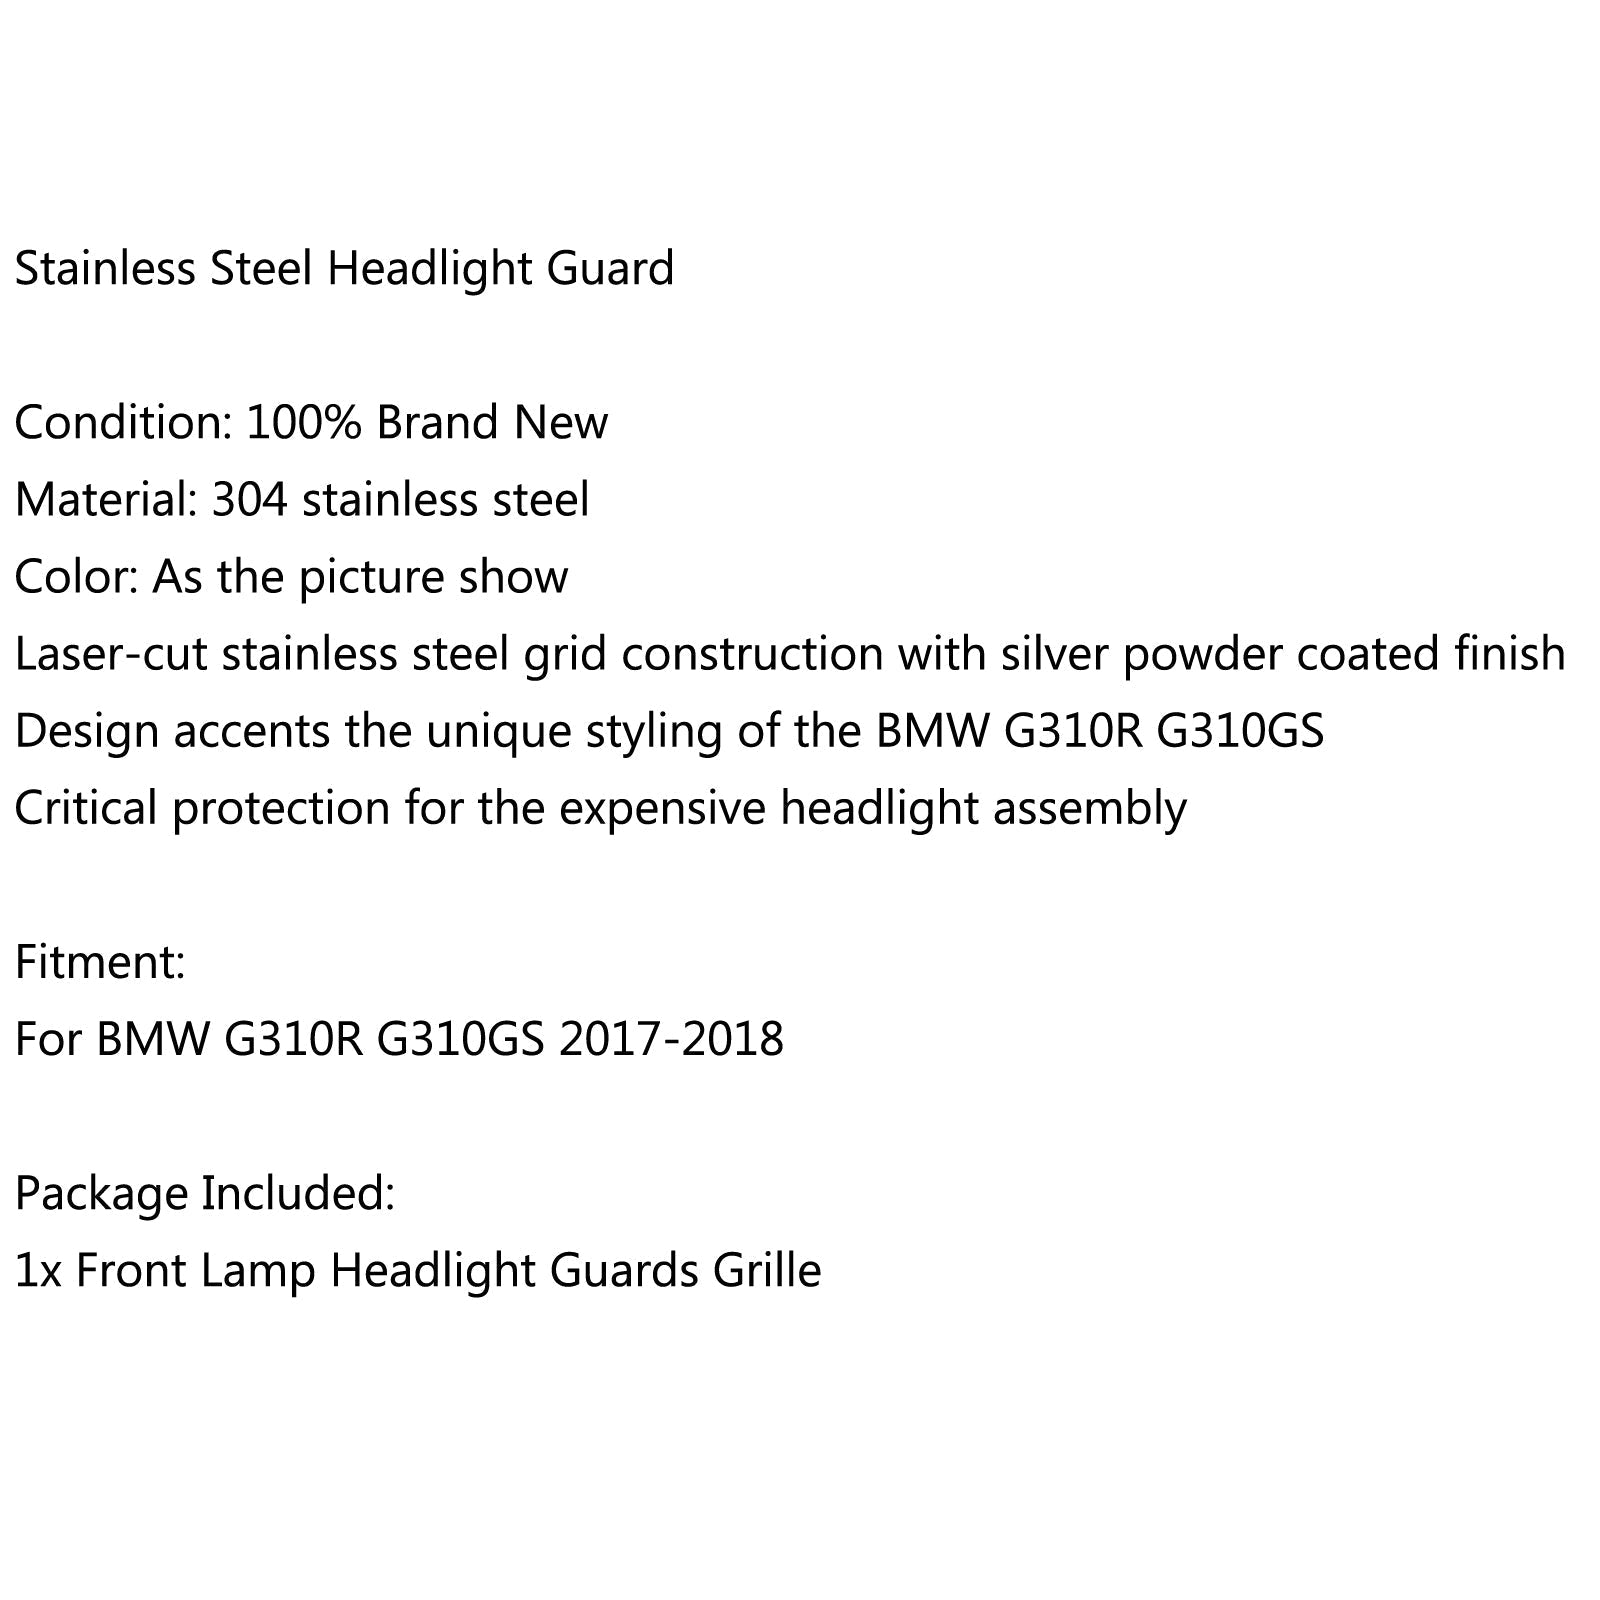 Protecteur de couvercle de protection de calandre de phare avant pour BMW G 310GS 2017-2018 générique